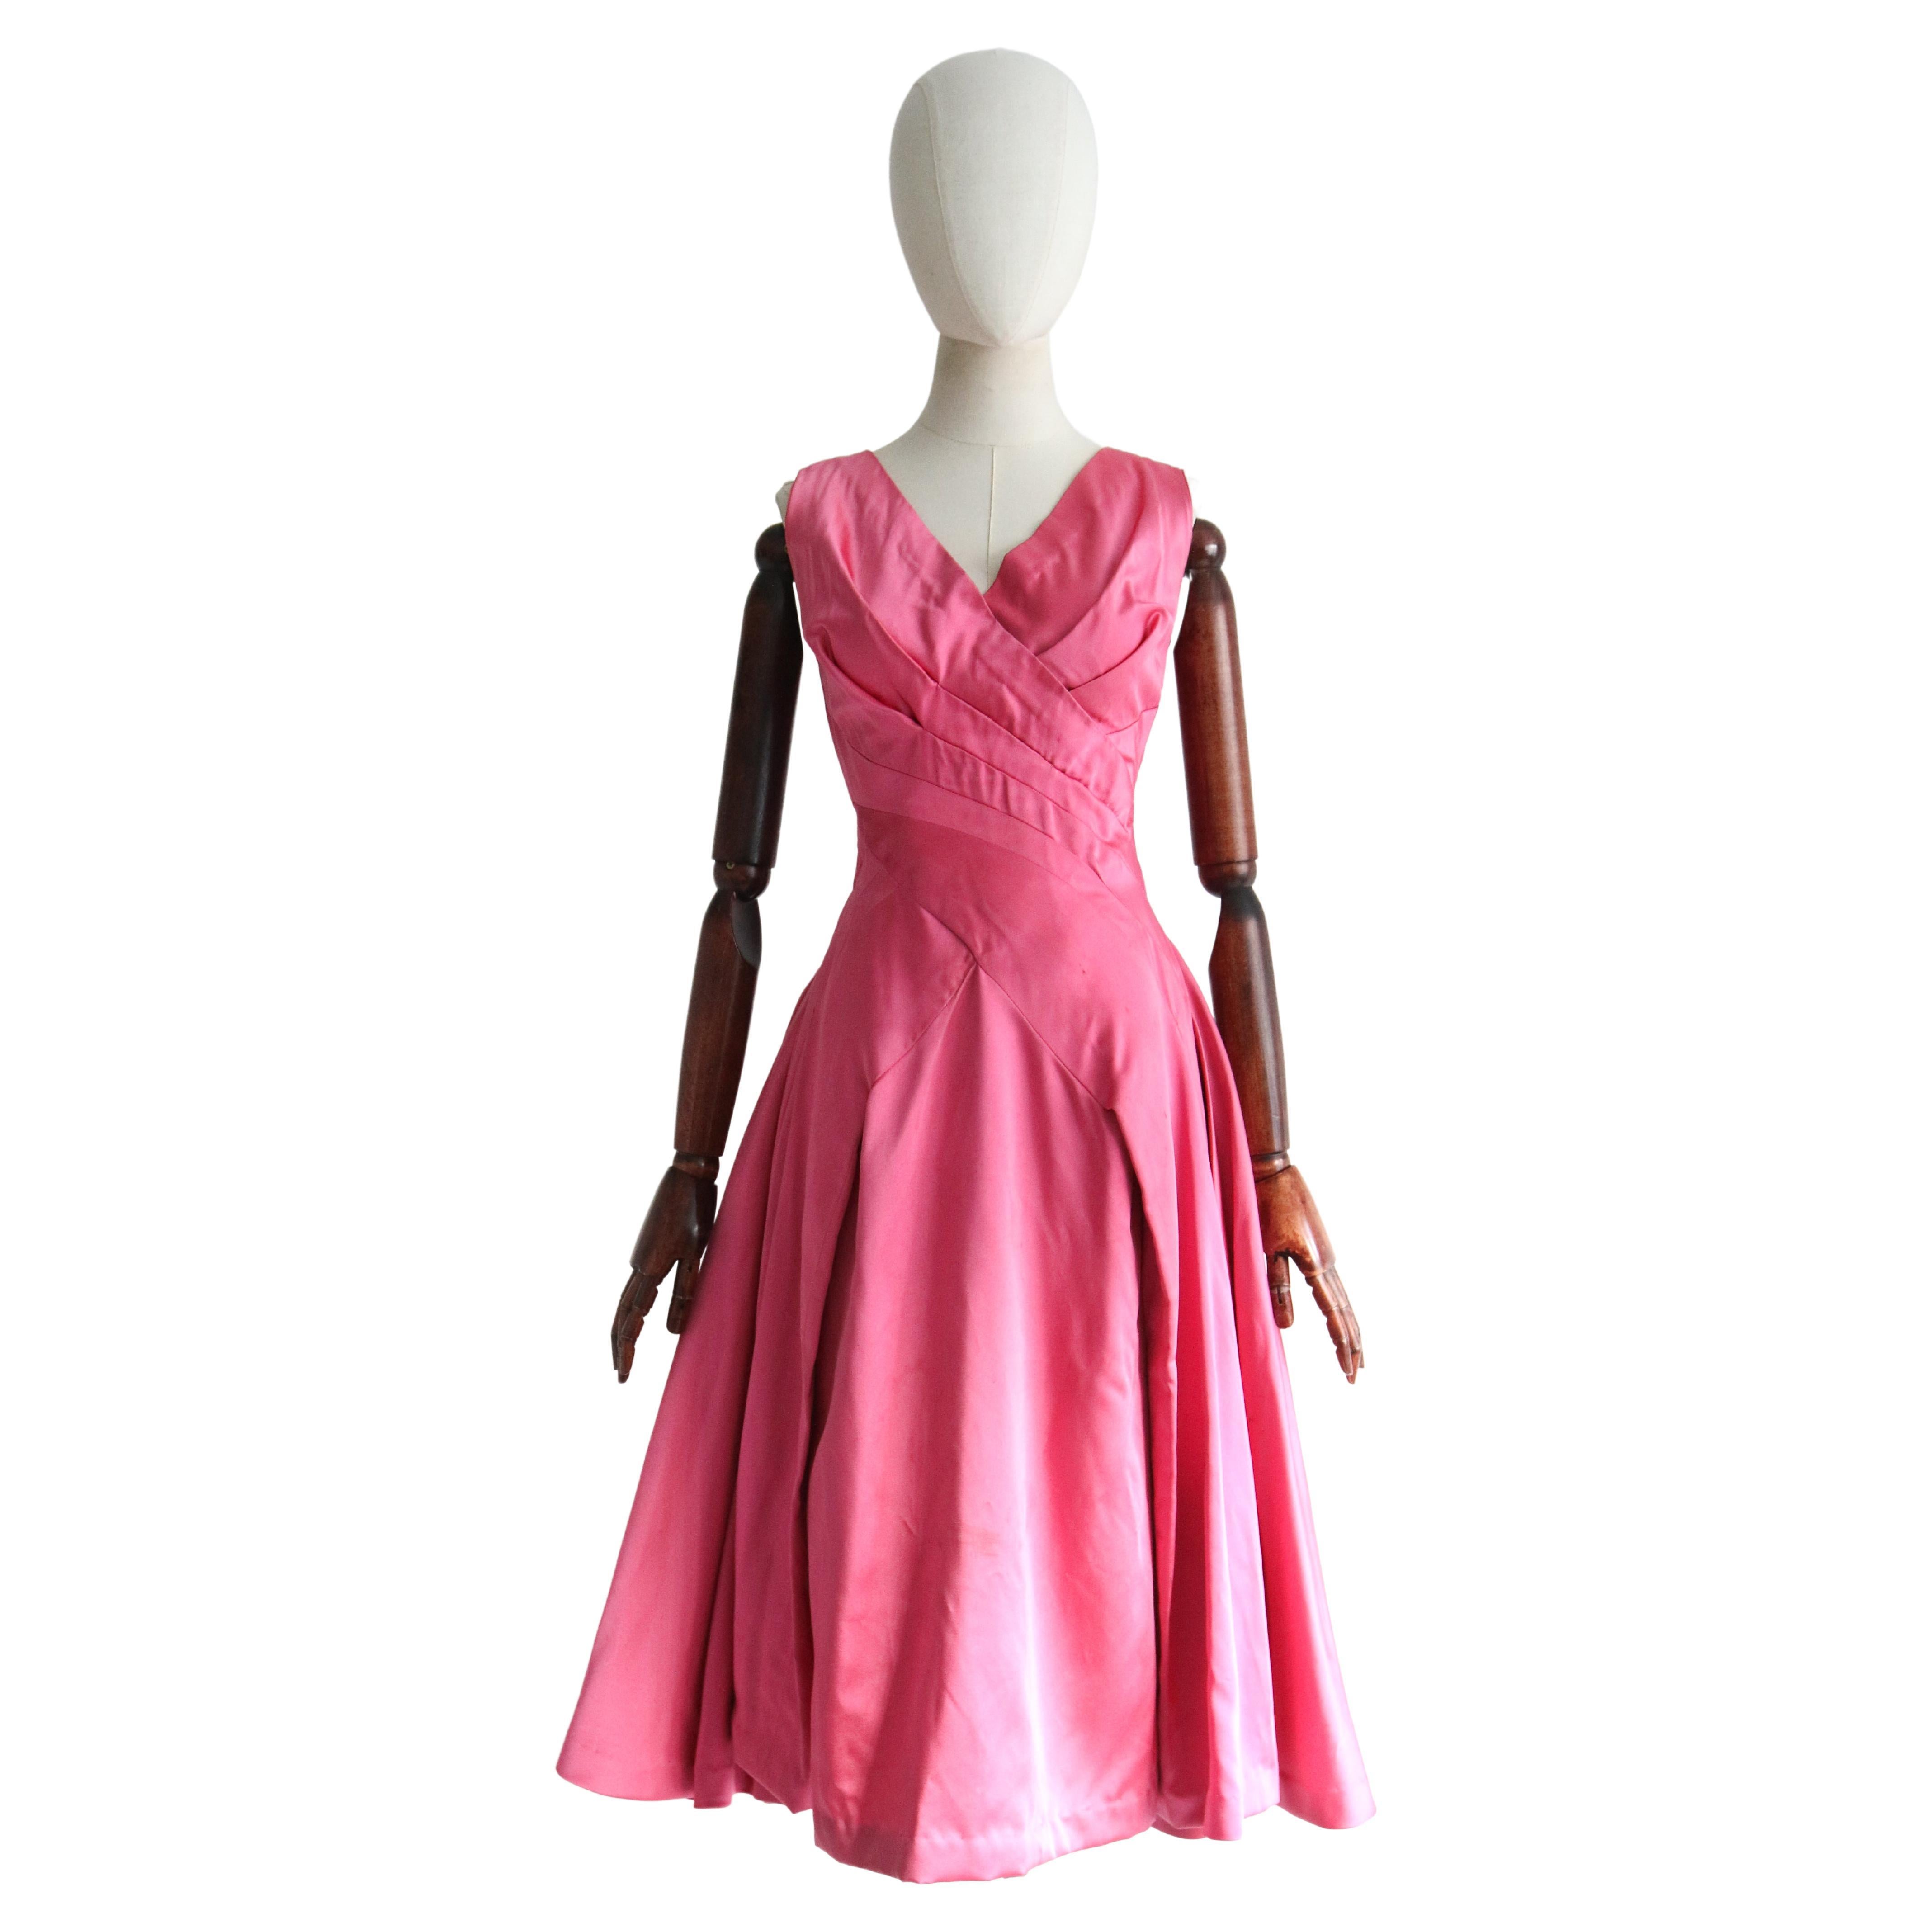 Robe duchesse rose pâle plissée vintage des années 1950, taille UK 8-10 US 4-6